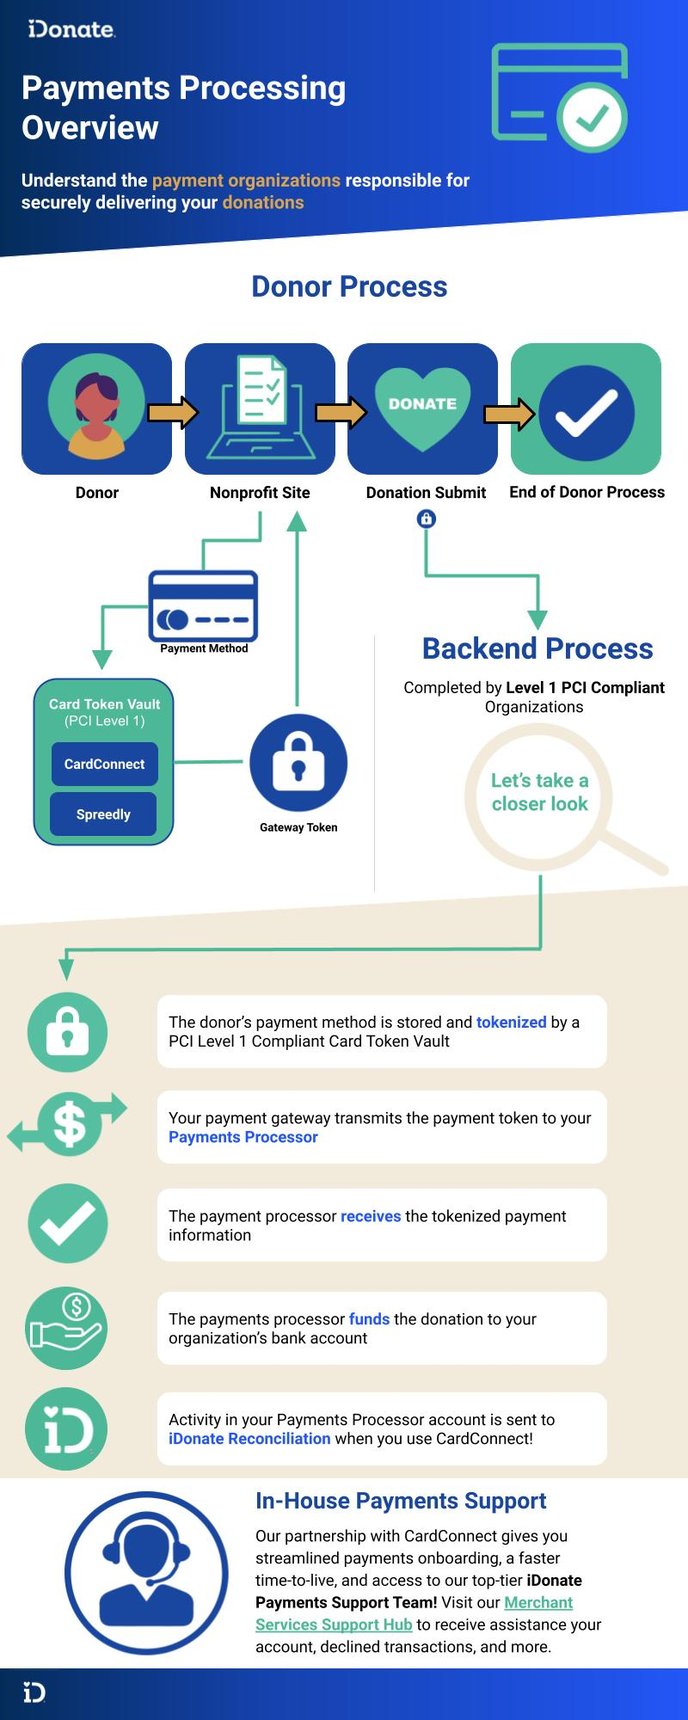 EXTERNAL - Payments Process